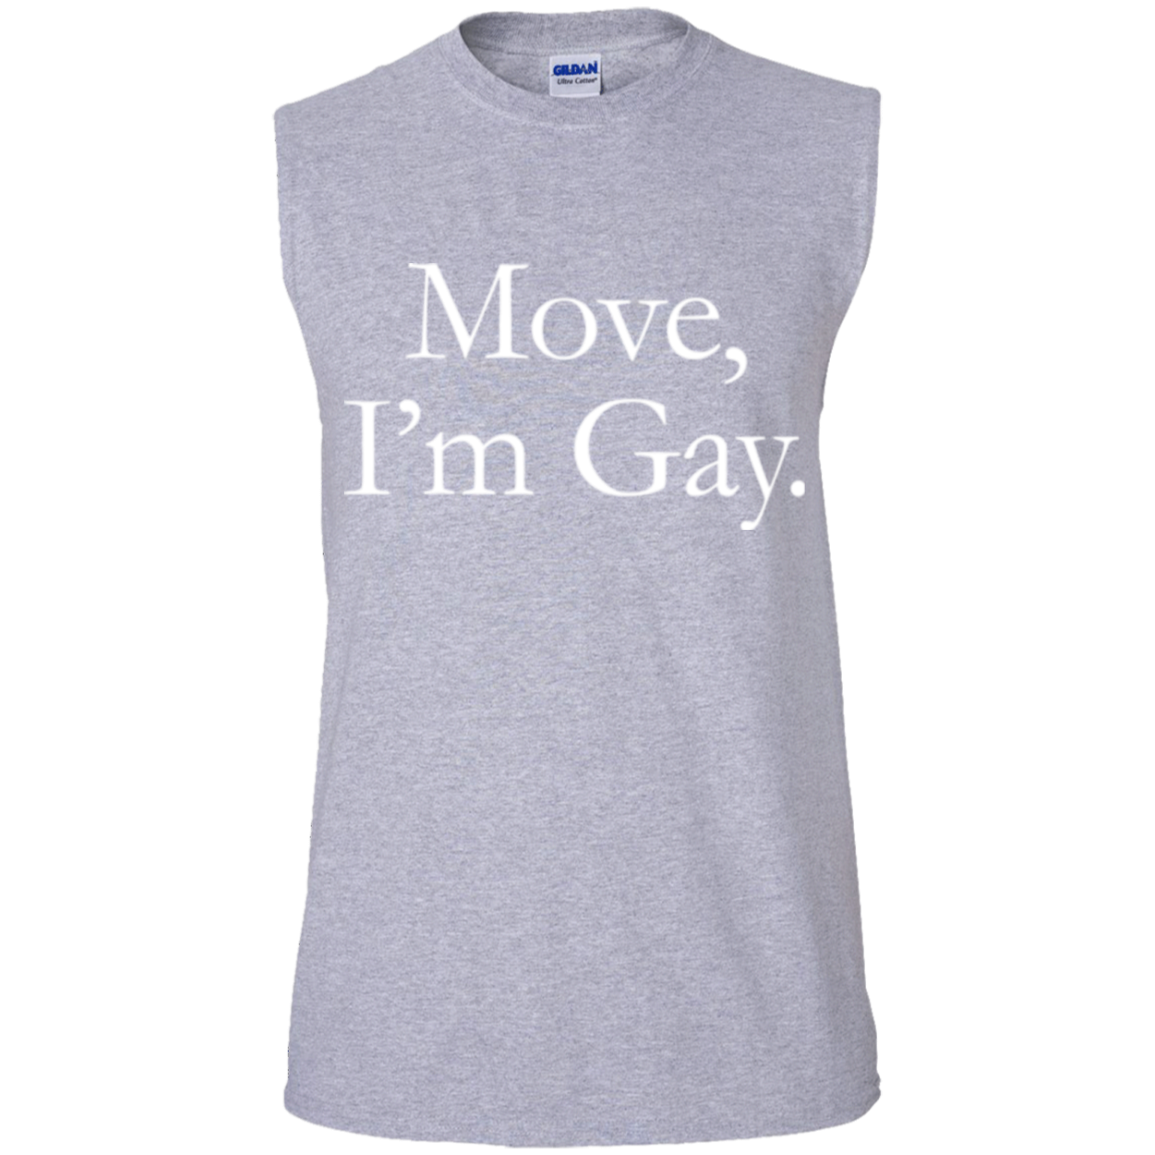 Move, I'm Gay Tank